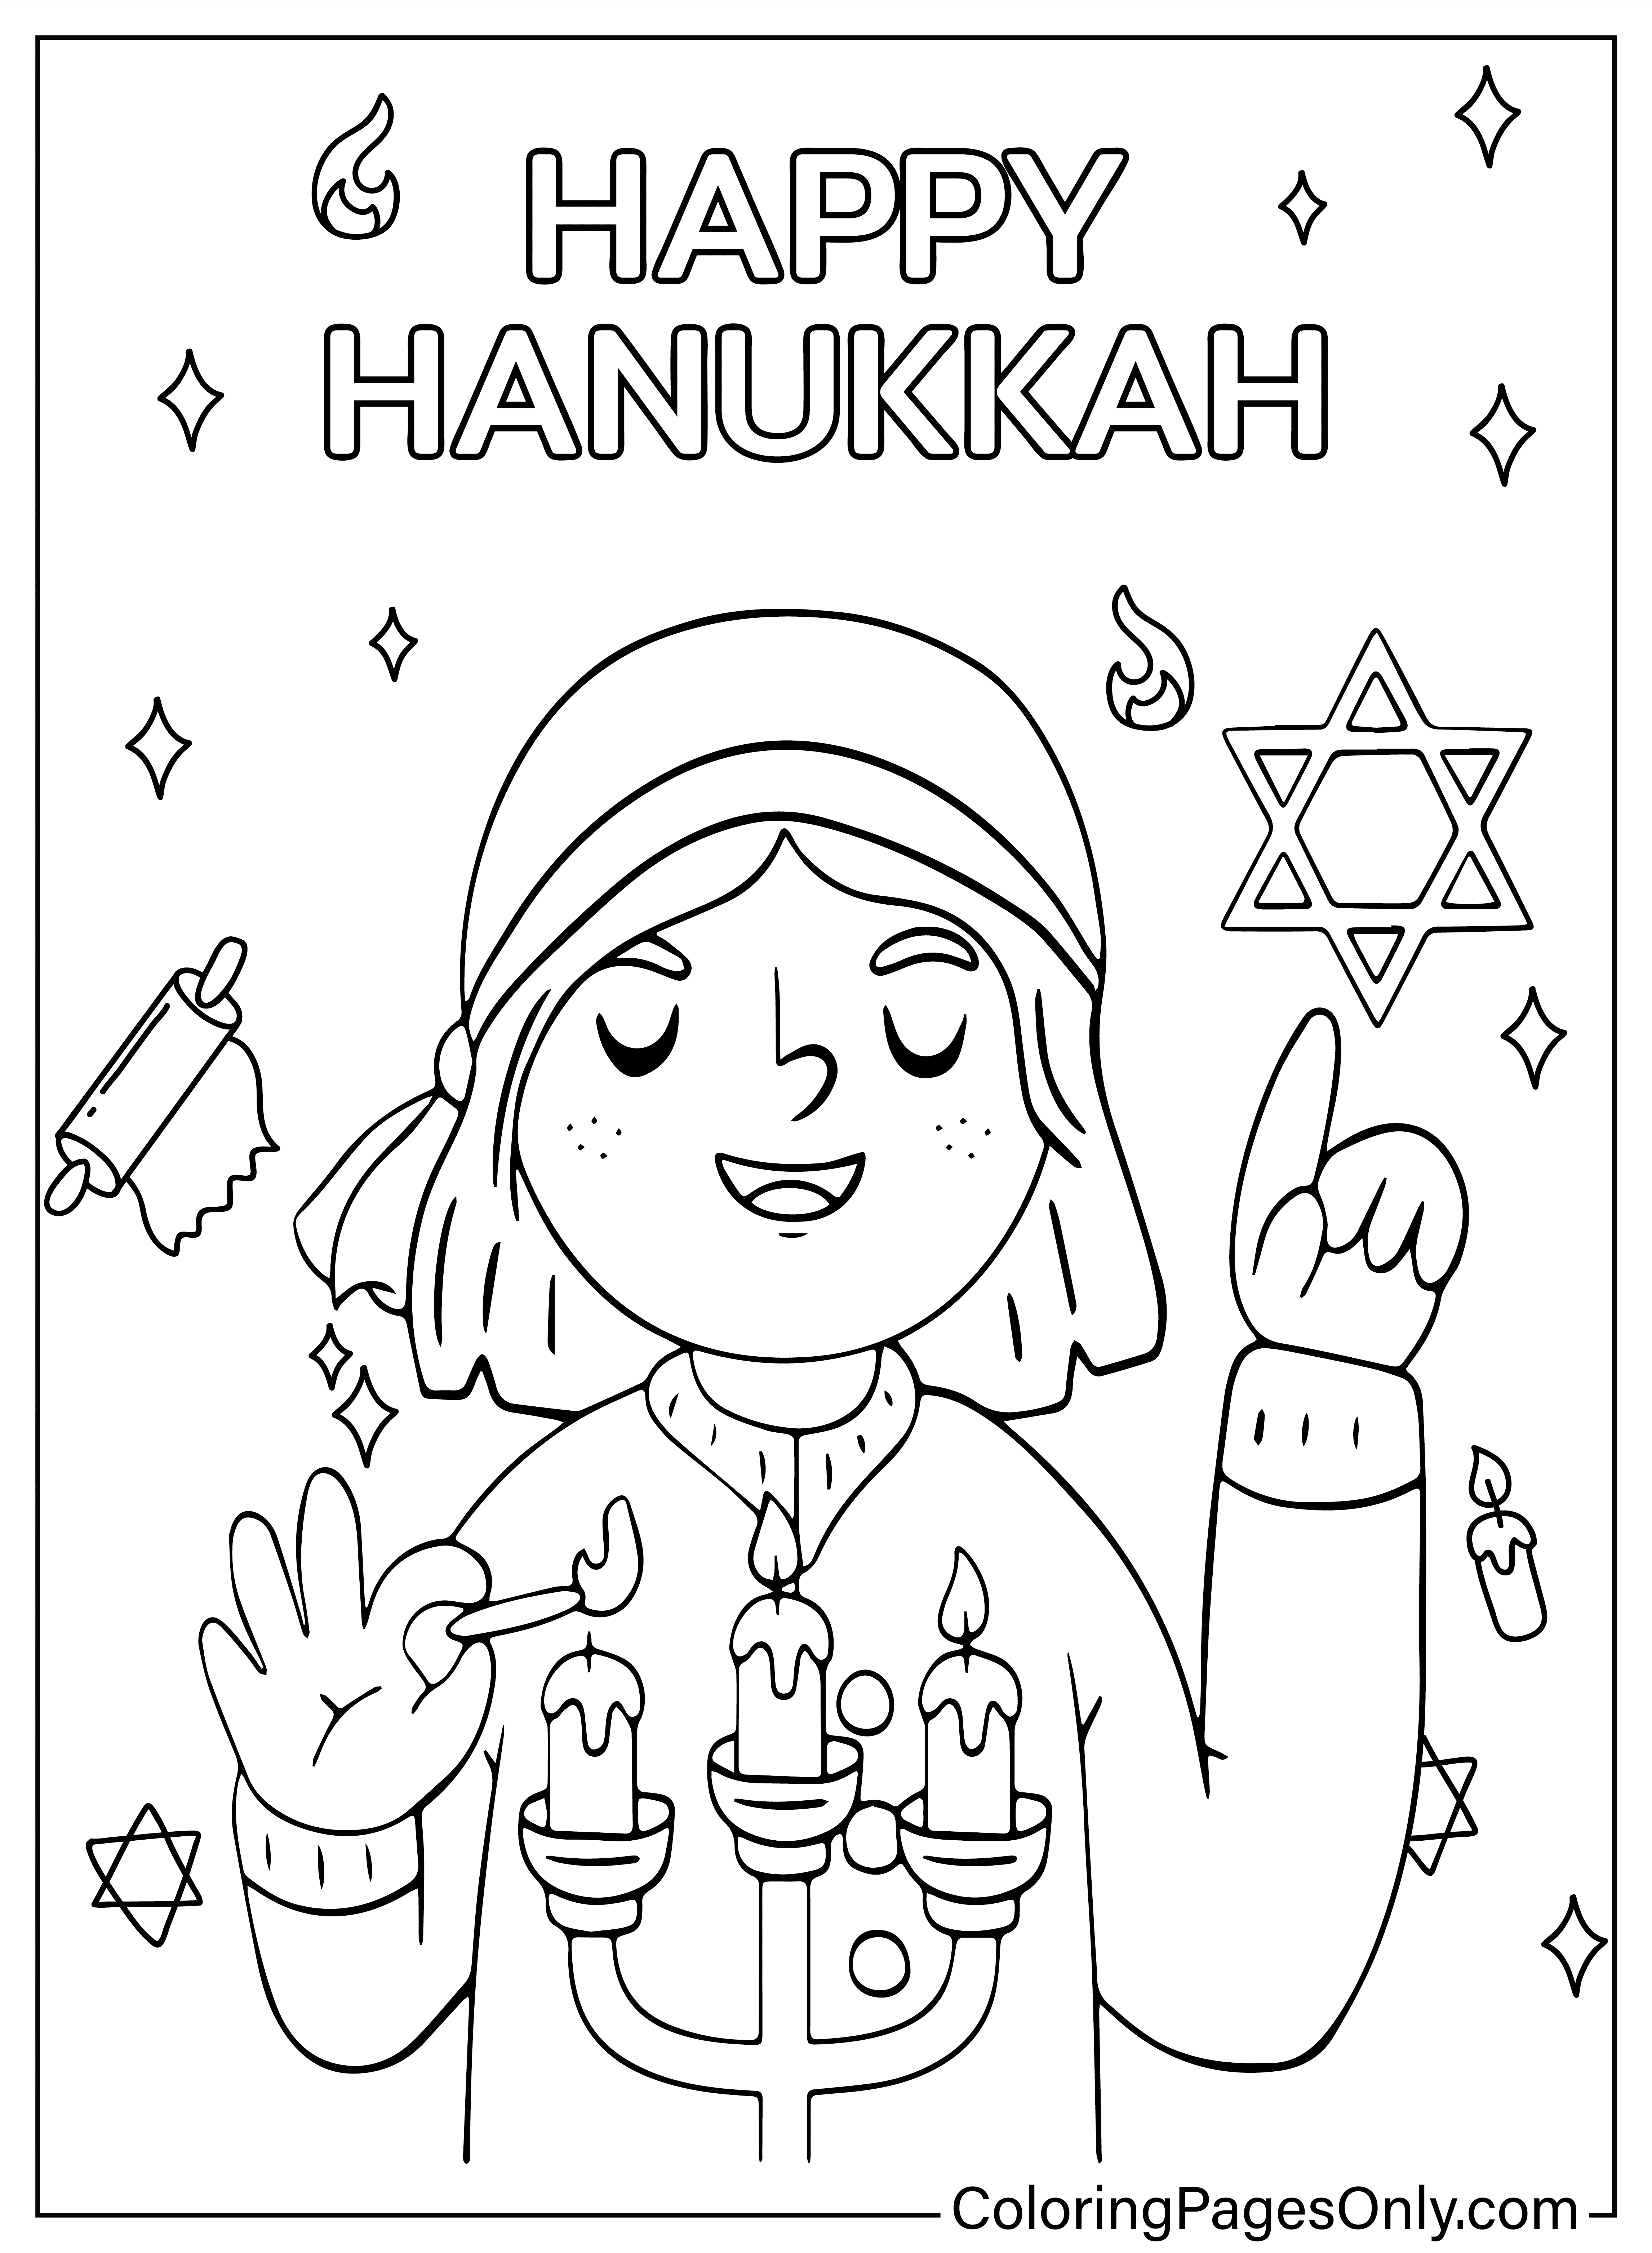 Página para colorear de Hanukkah de Hanukkah